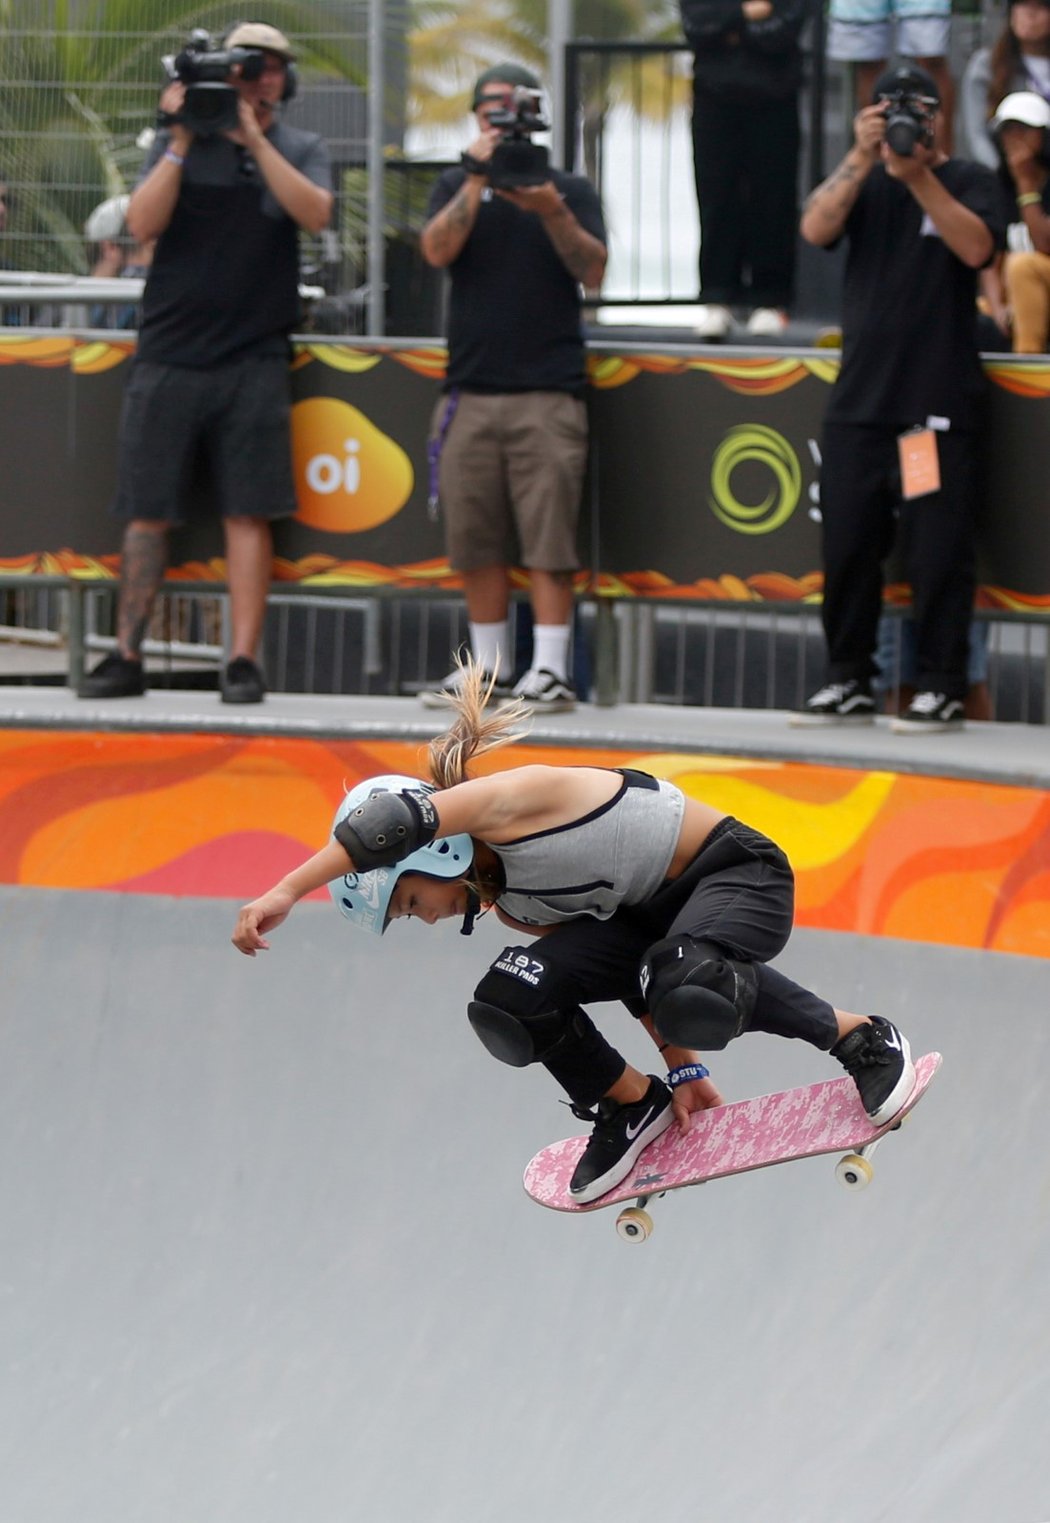 Jedenáctiletá skateboardistka Sky Brownová, jež by se mohla stát příští rok v Tokiu nejmladší britskou olympioničkou v historii, měla minulý týden vážný pád na rampě